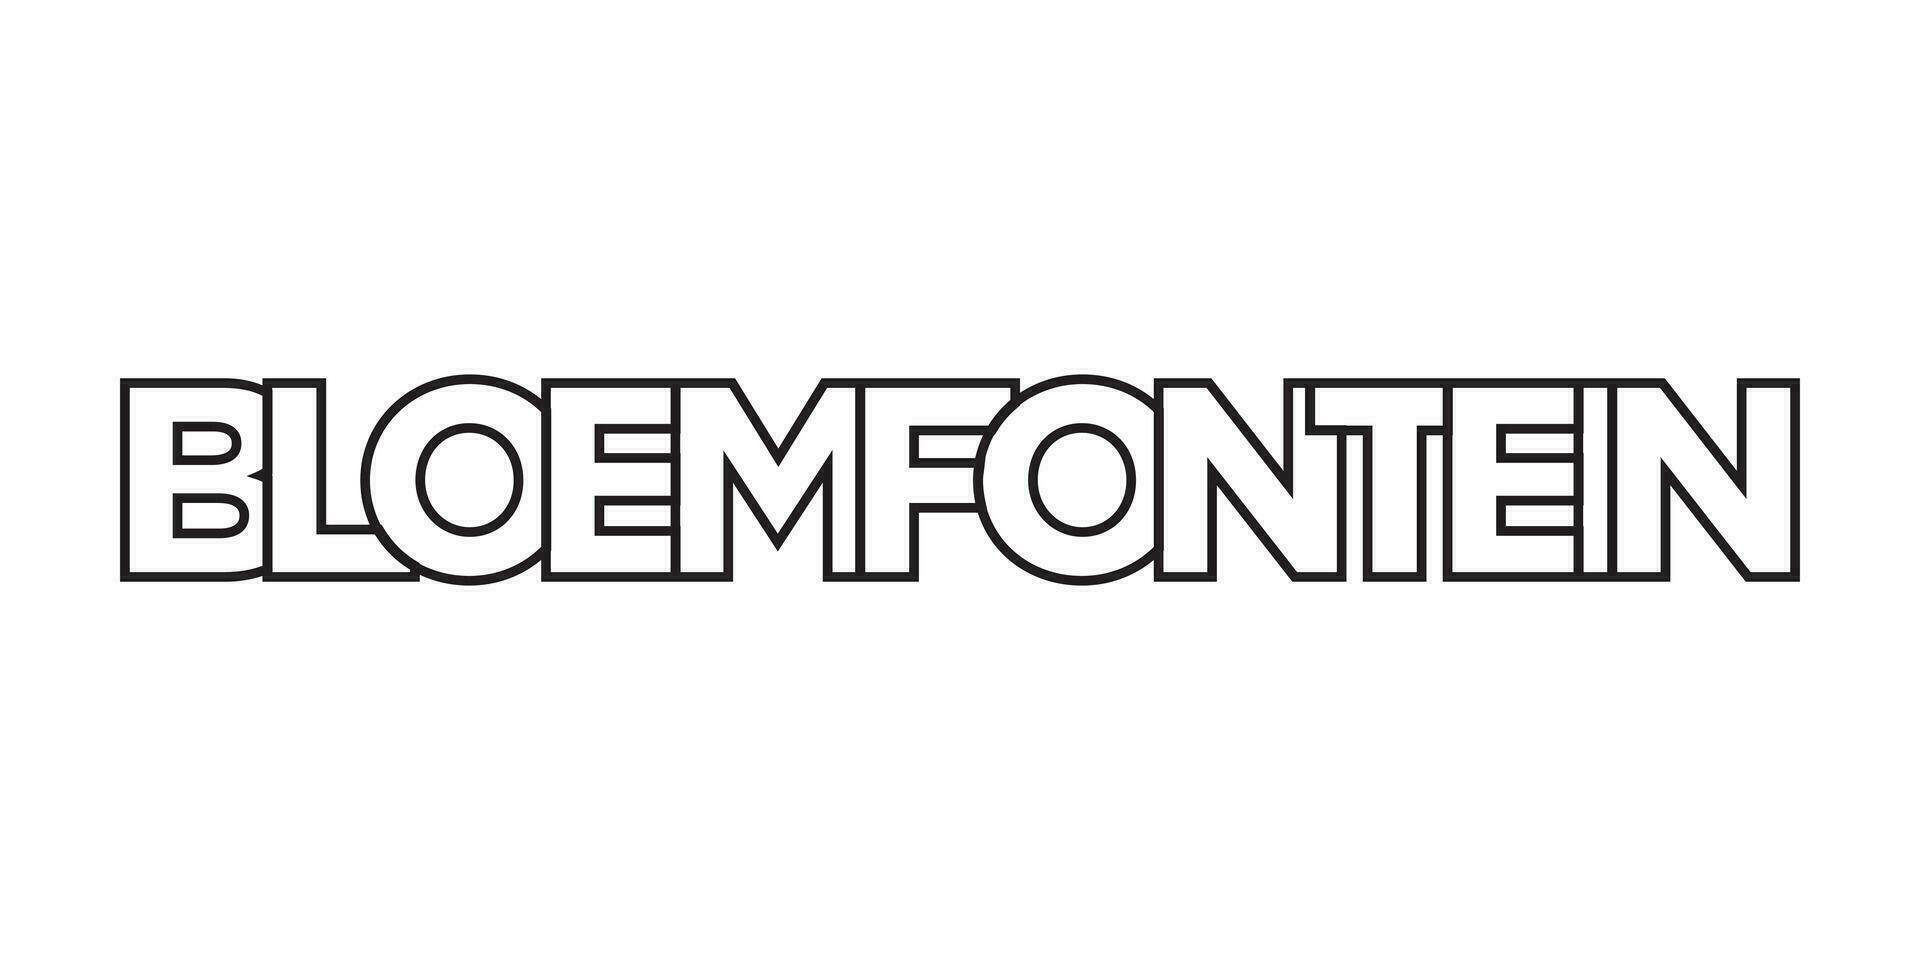 Bloemfontein en el sur África emblema. el diseño caracteristicas un geométrico estilo, vector ilustración con negrita tipografía en un moderno fuente. el gráfico eslogan letras.